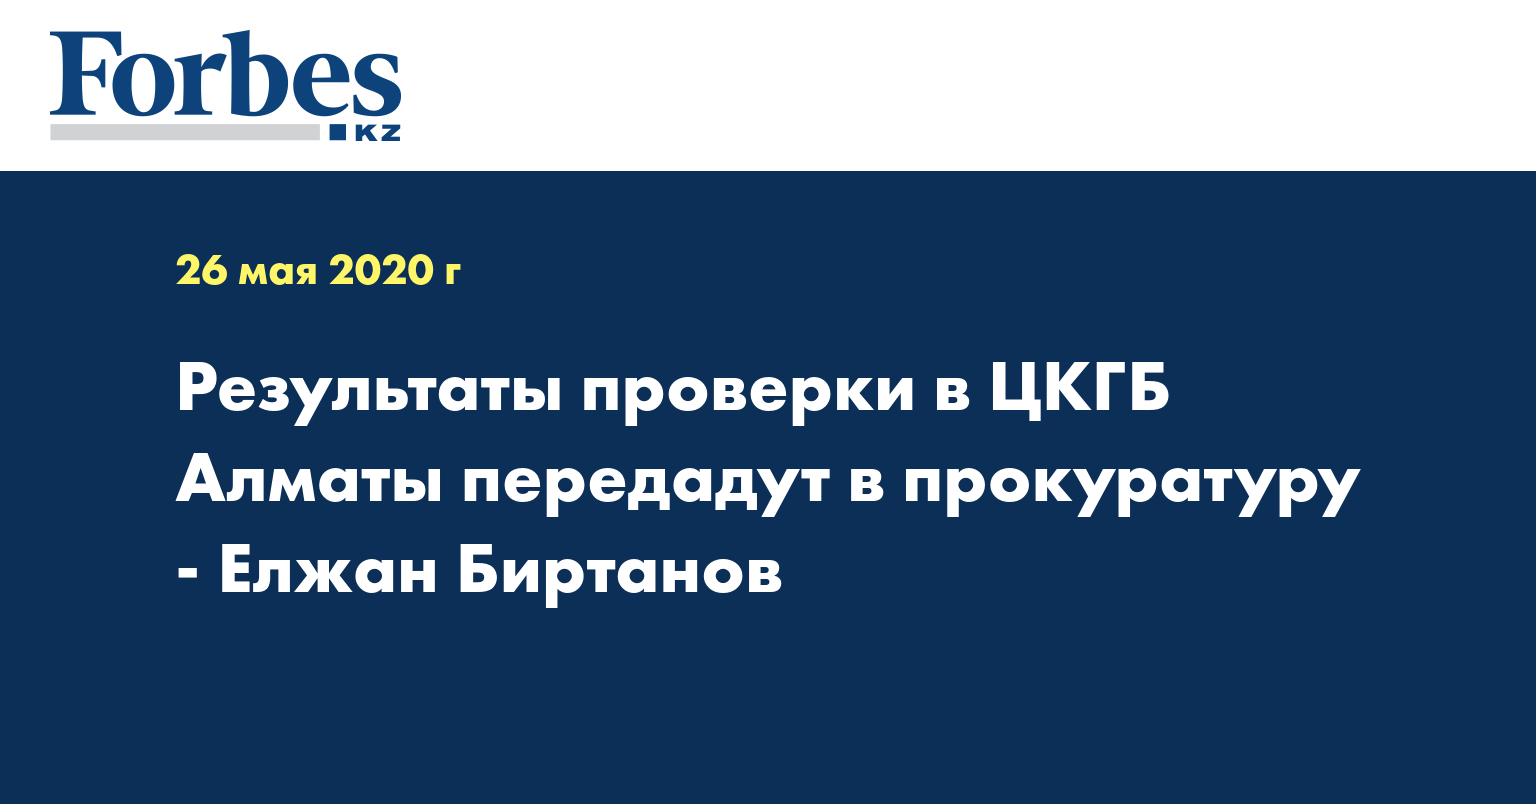 Результаты проверки в ЦКГБ Алматы передадут в прокуратуру - Елжан Биртанов